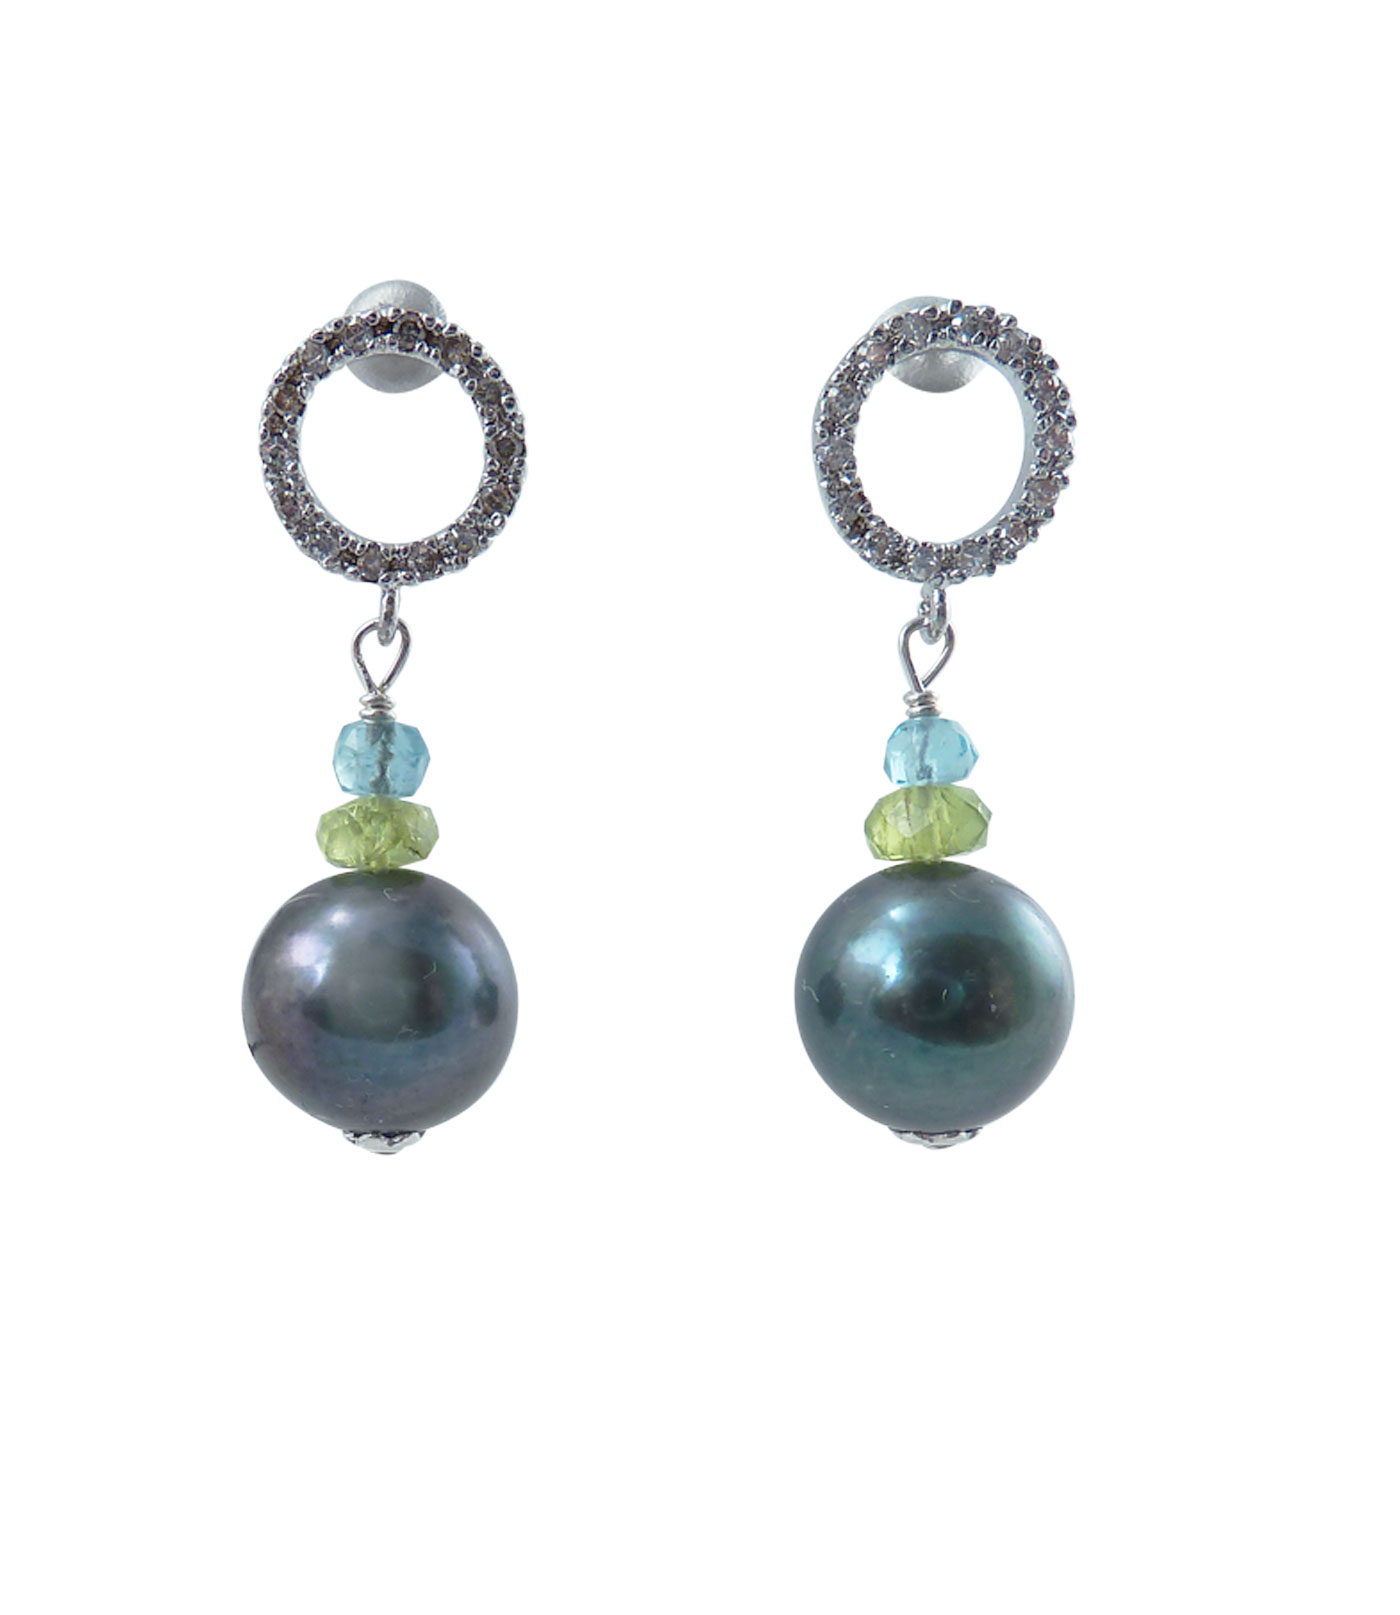 Designer pearl earrings apatite black pearls and peridot